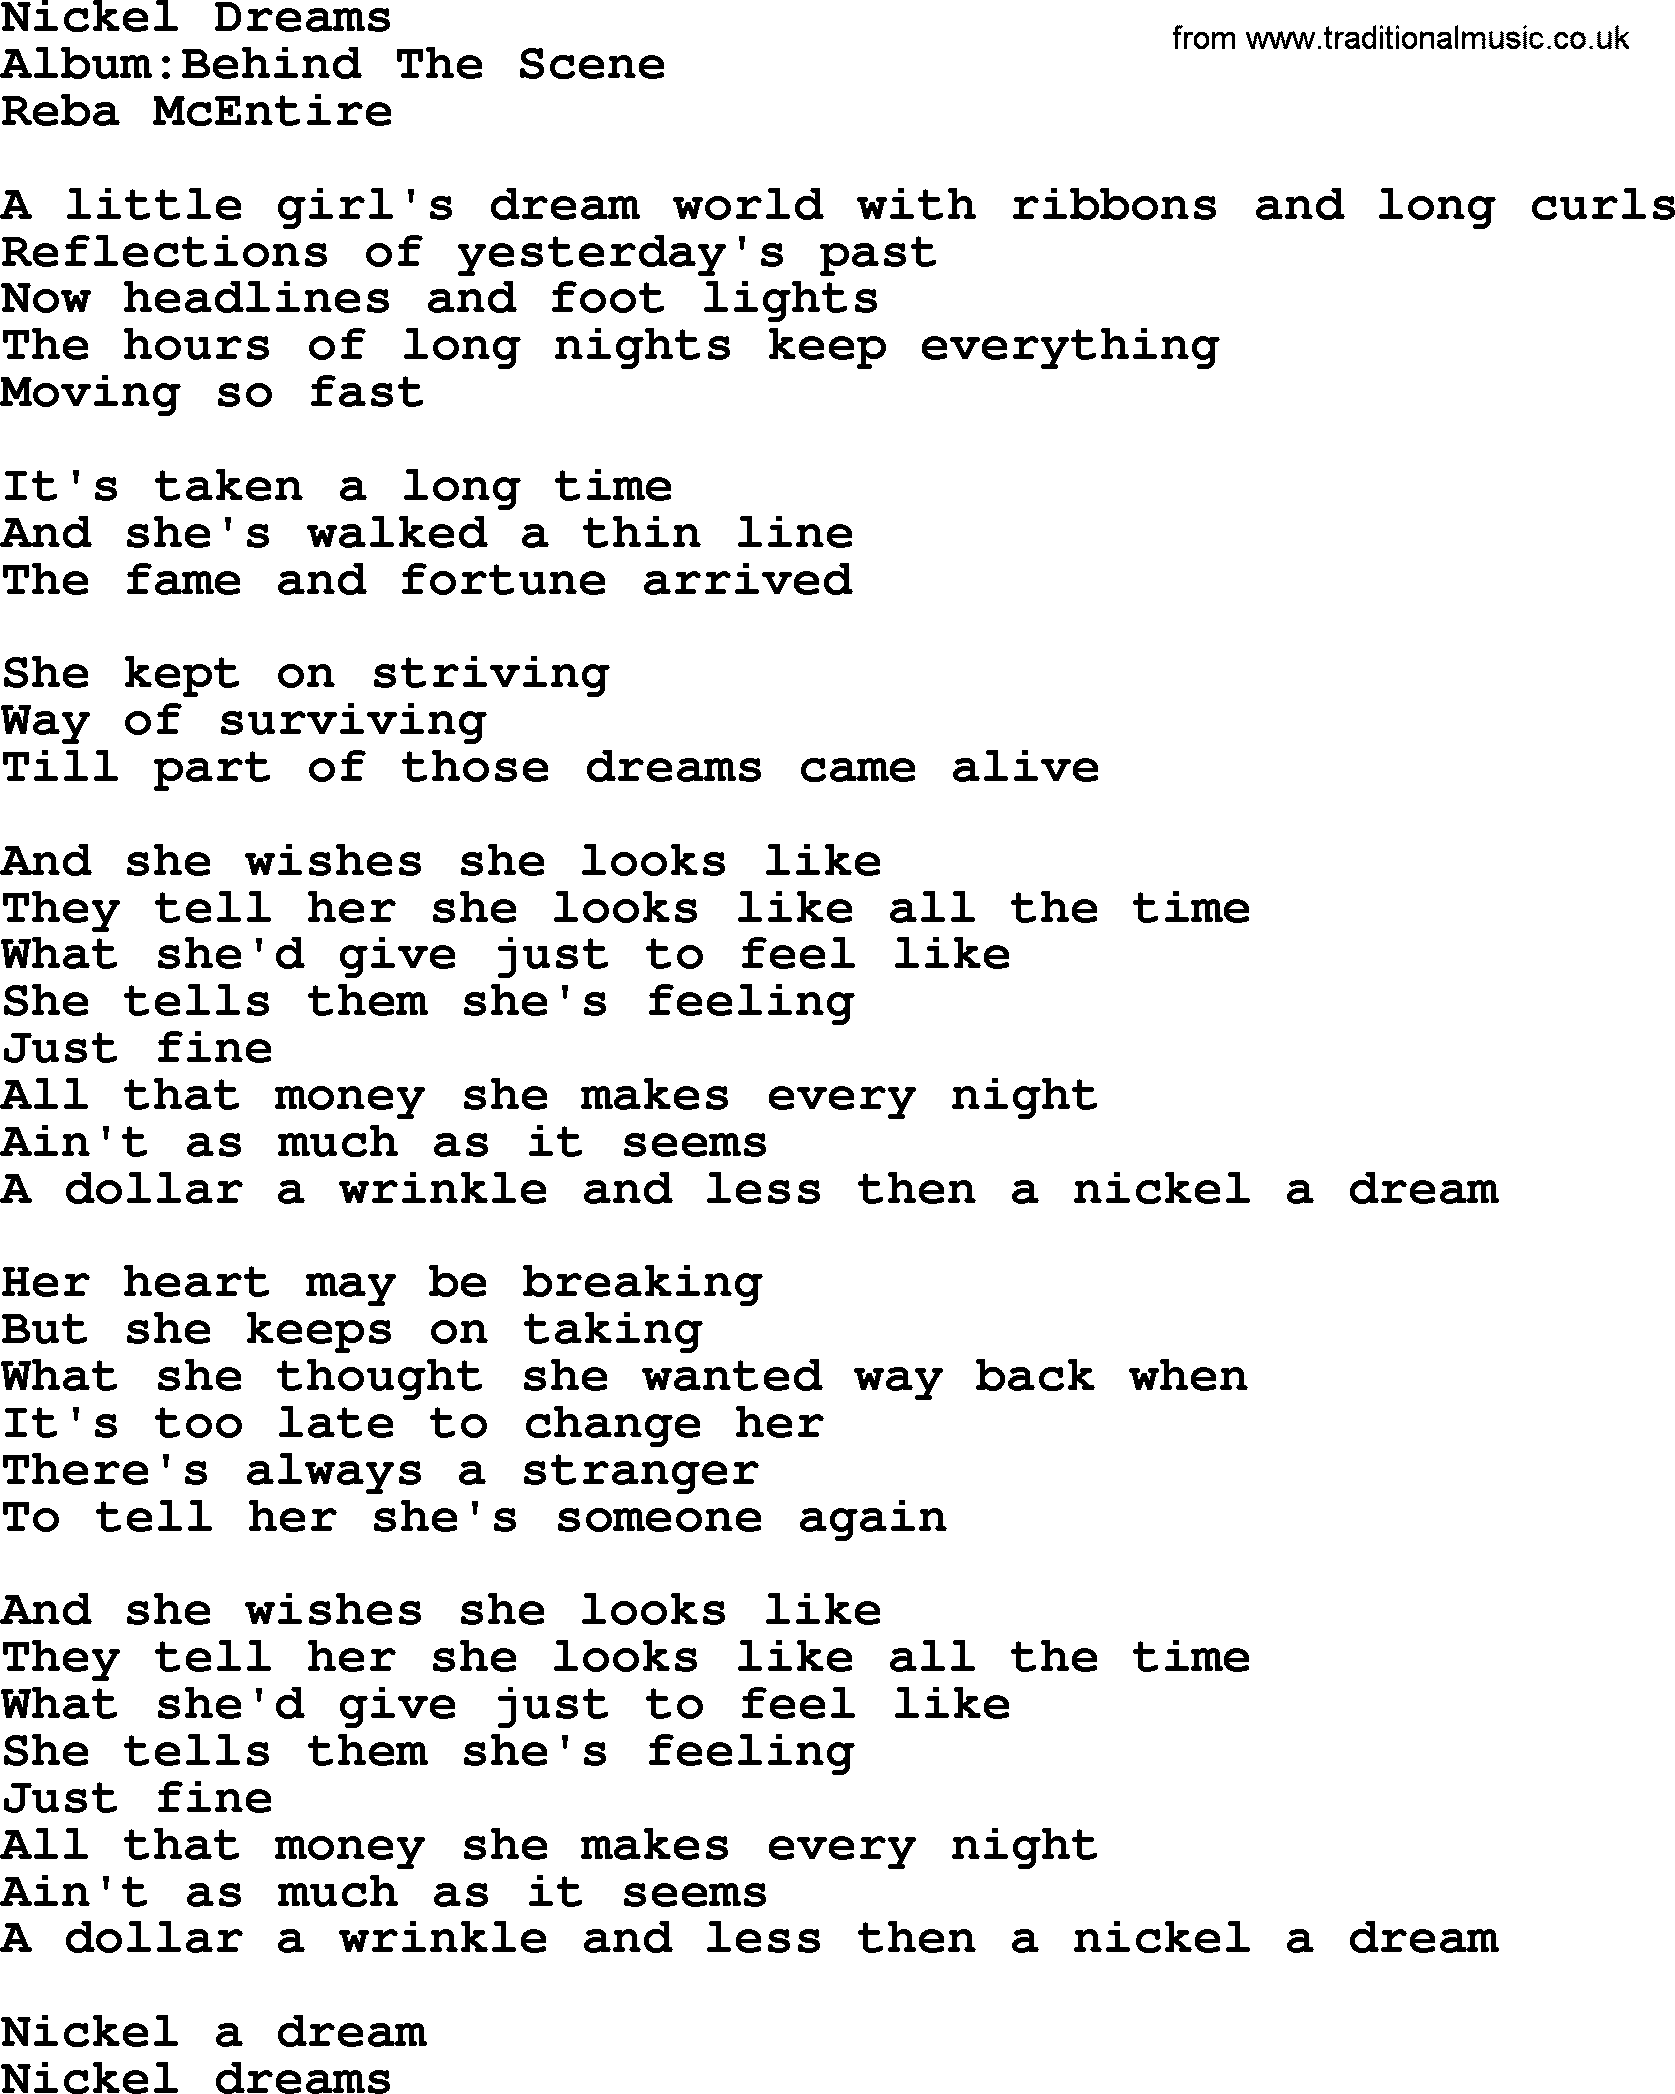 Reba McEntire song: Nickel Dreams lyrics